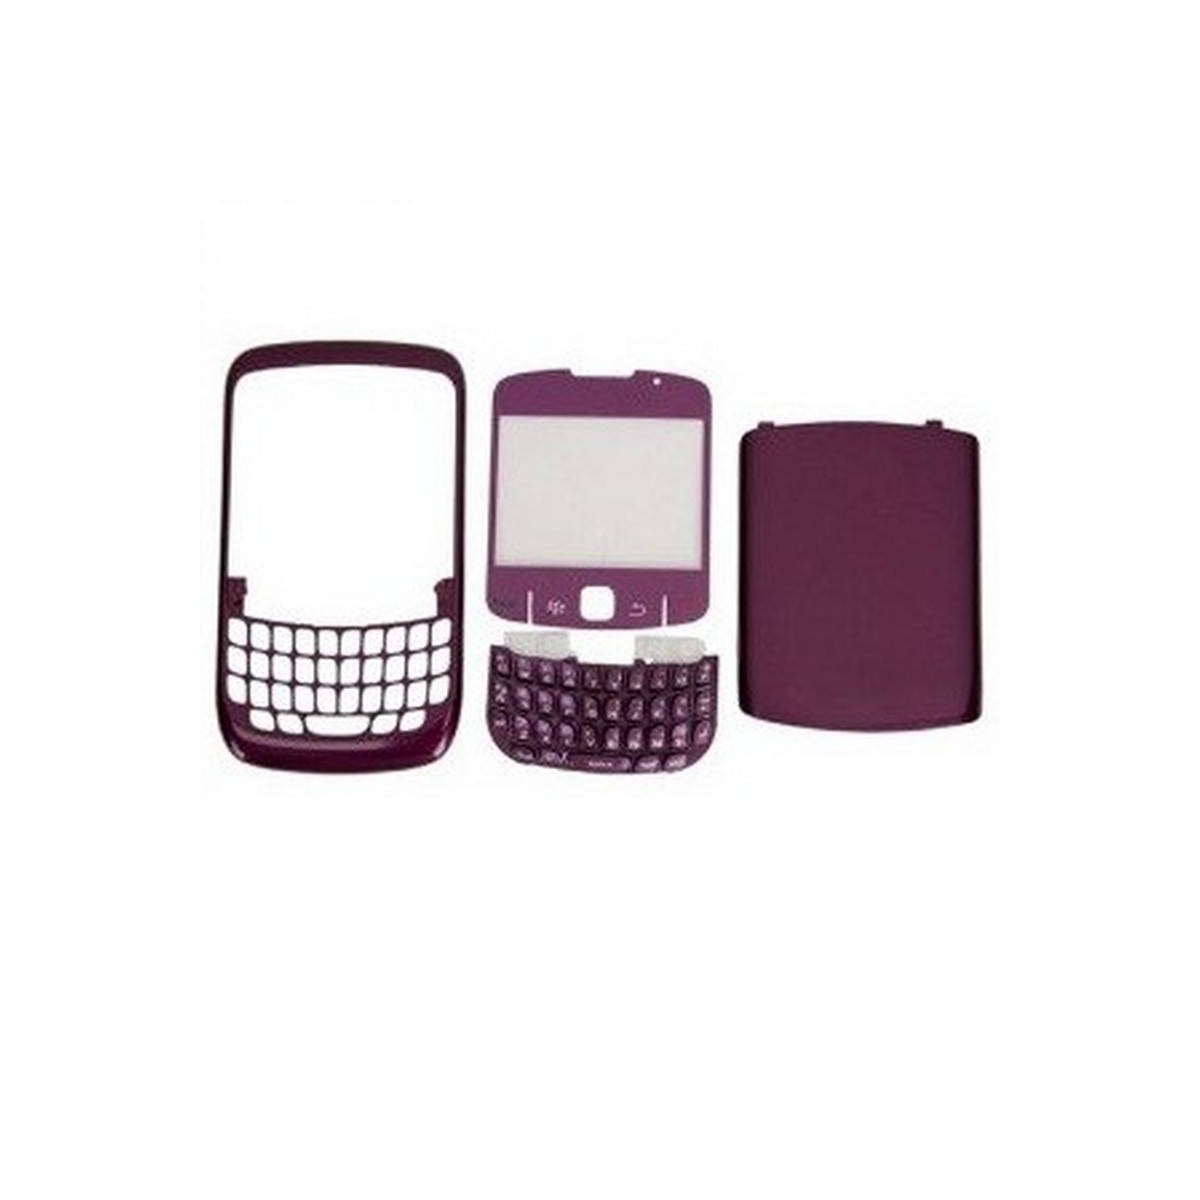 Carcasa BlackBerry 8520 MORADO